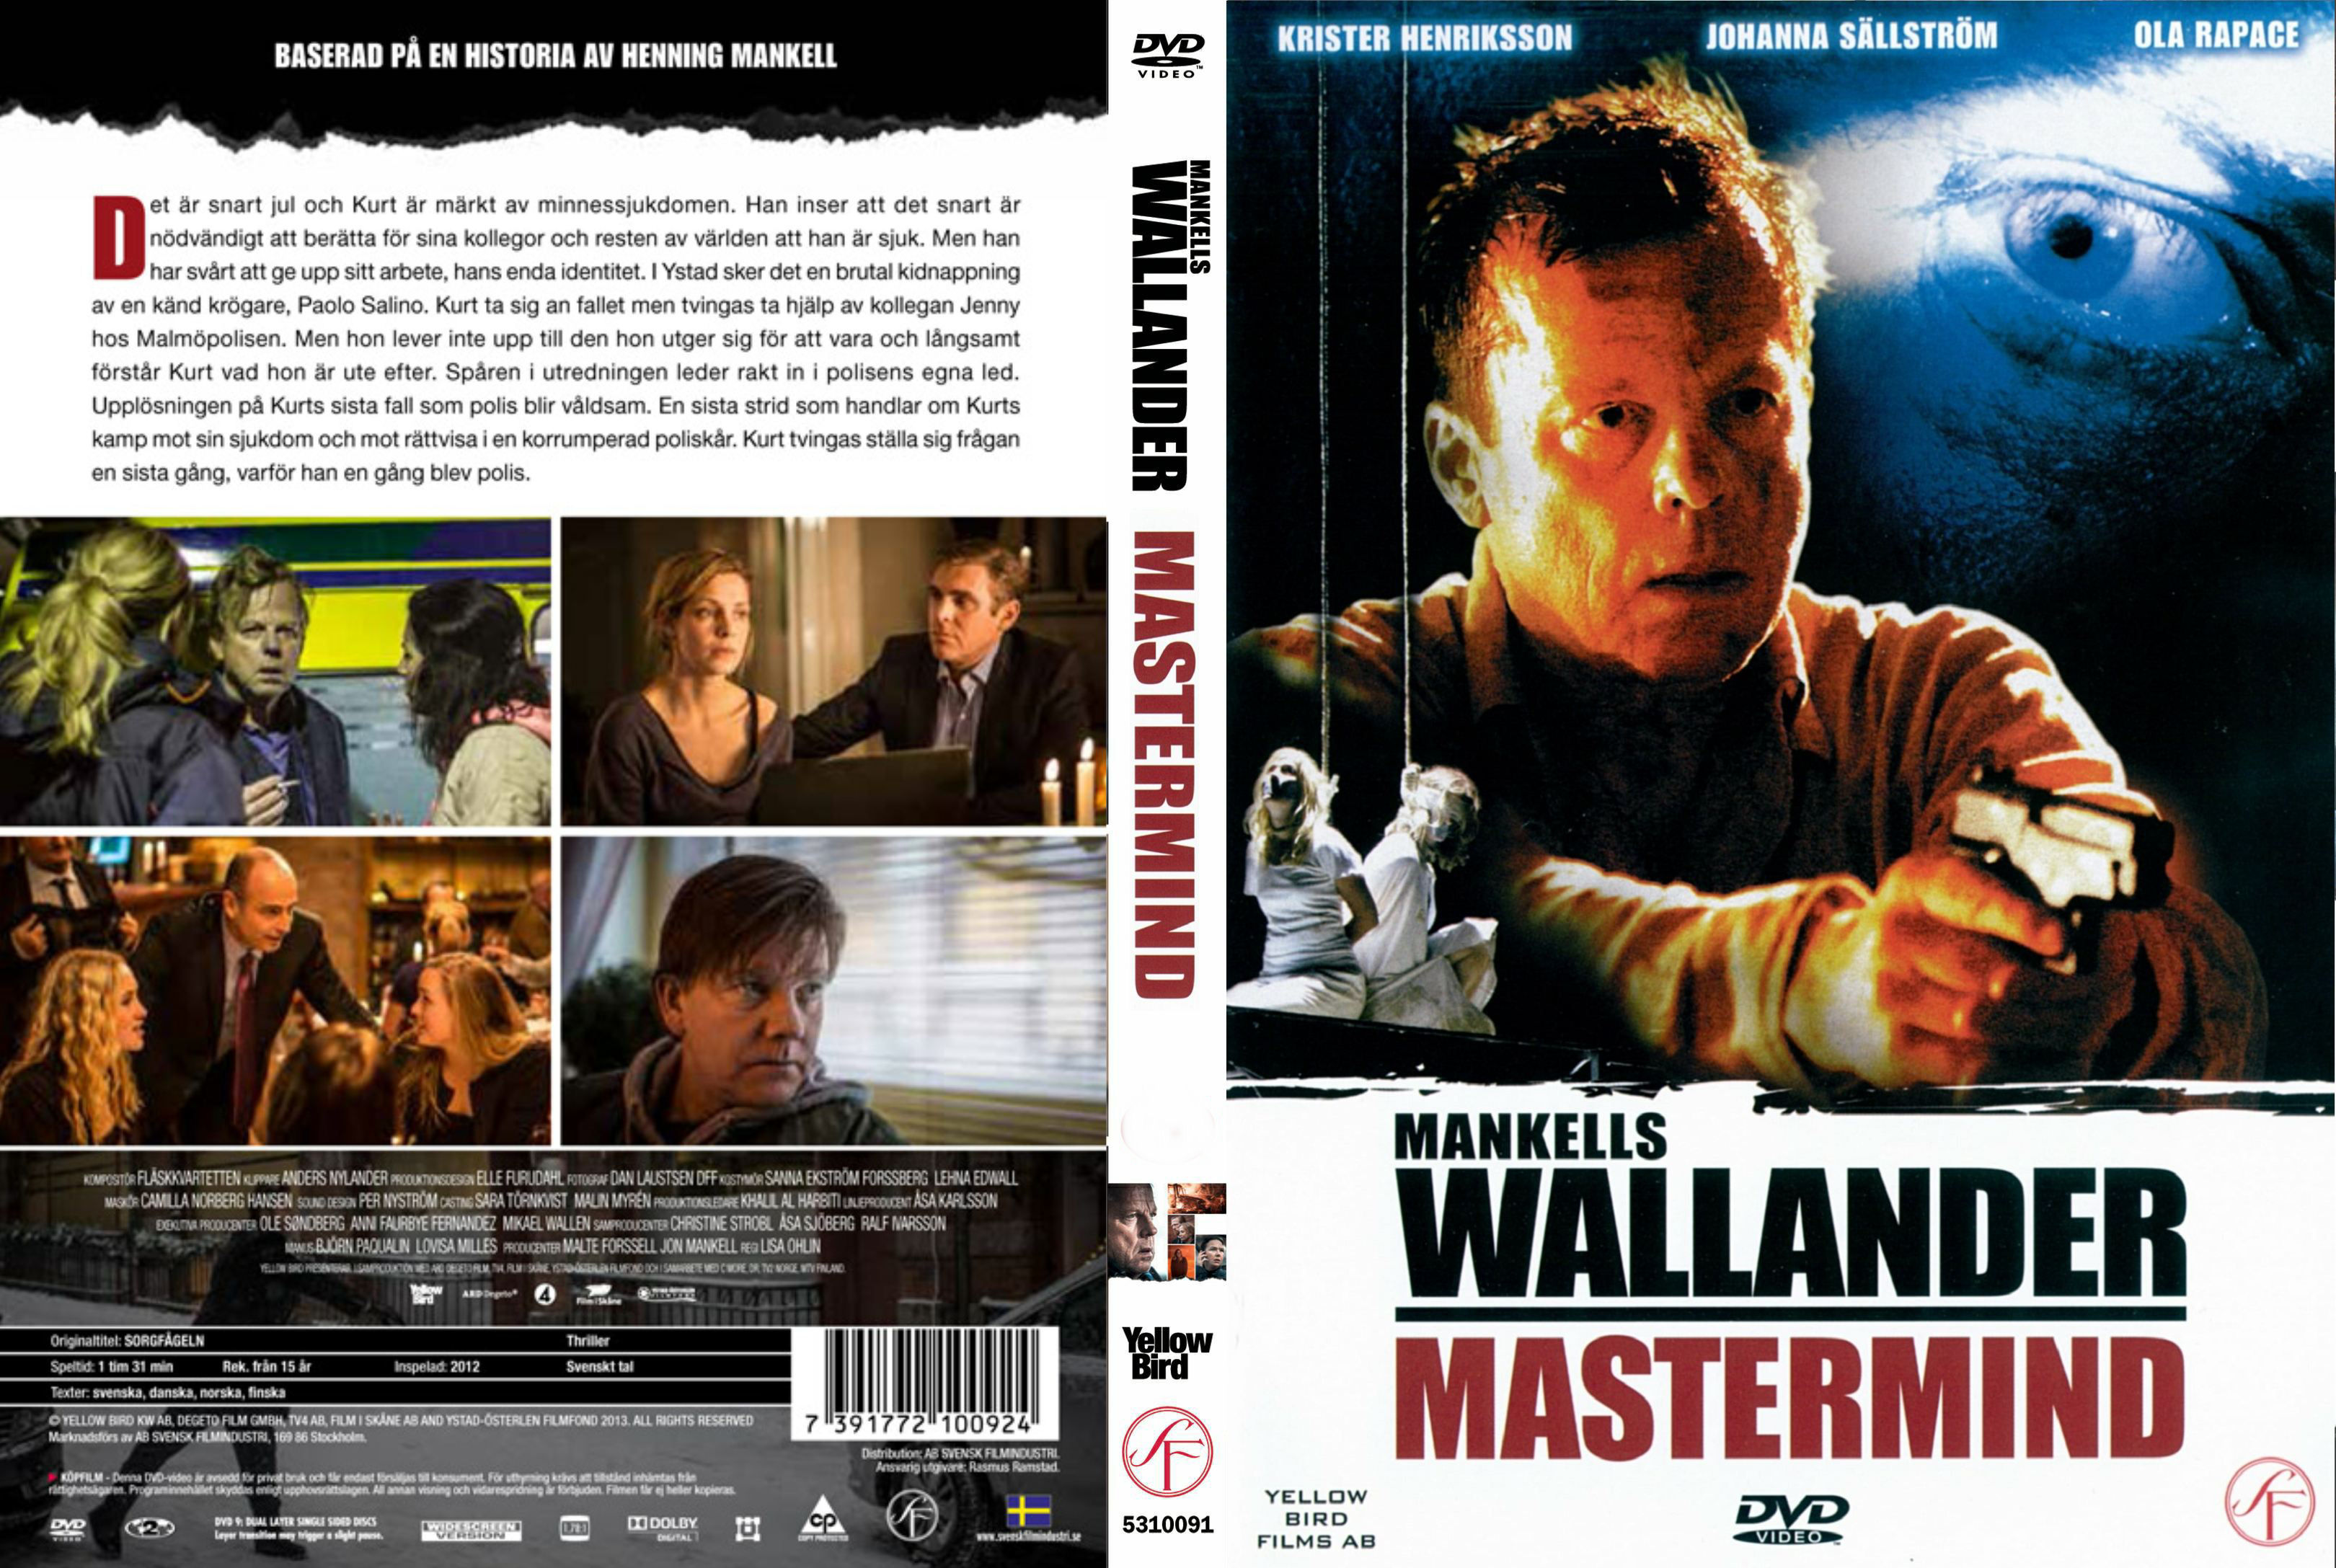 06 Mastermind (Mastermind) Wallander (Krister Henrikson) DvD 6 van 32